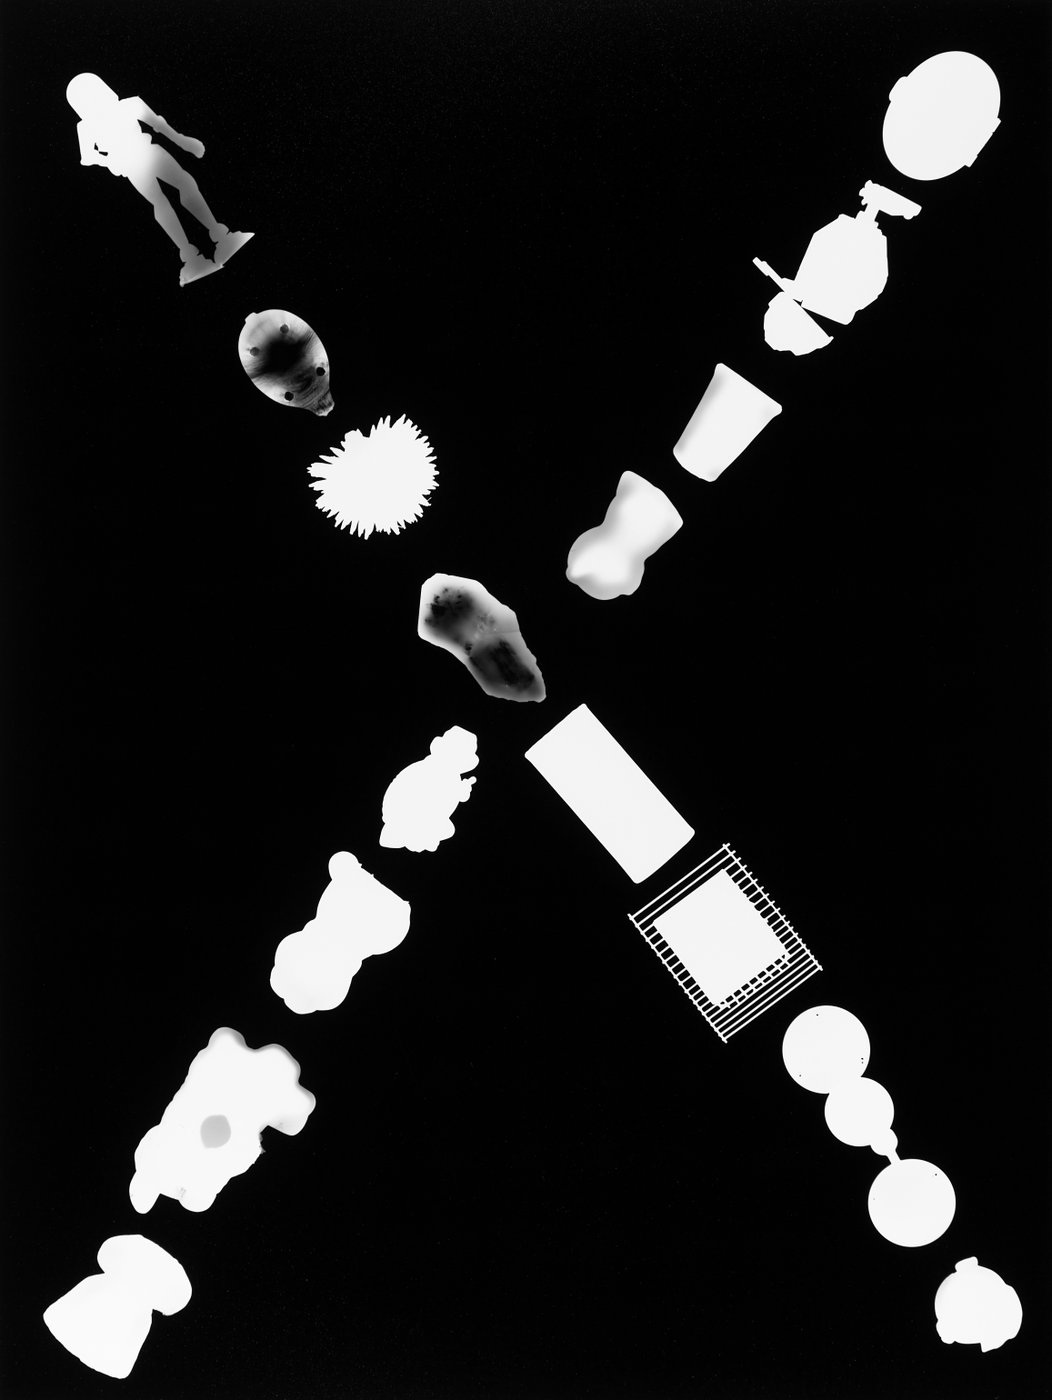 Fotogramm: Kreuz aus Gegenständen auf schwarzem Fotopapier